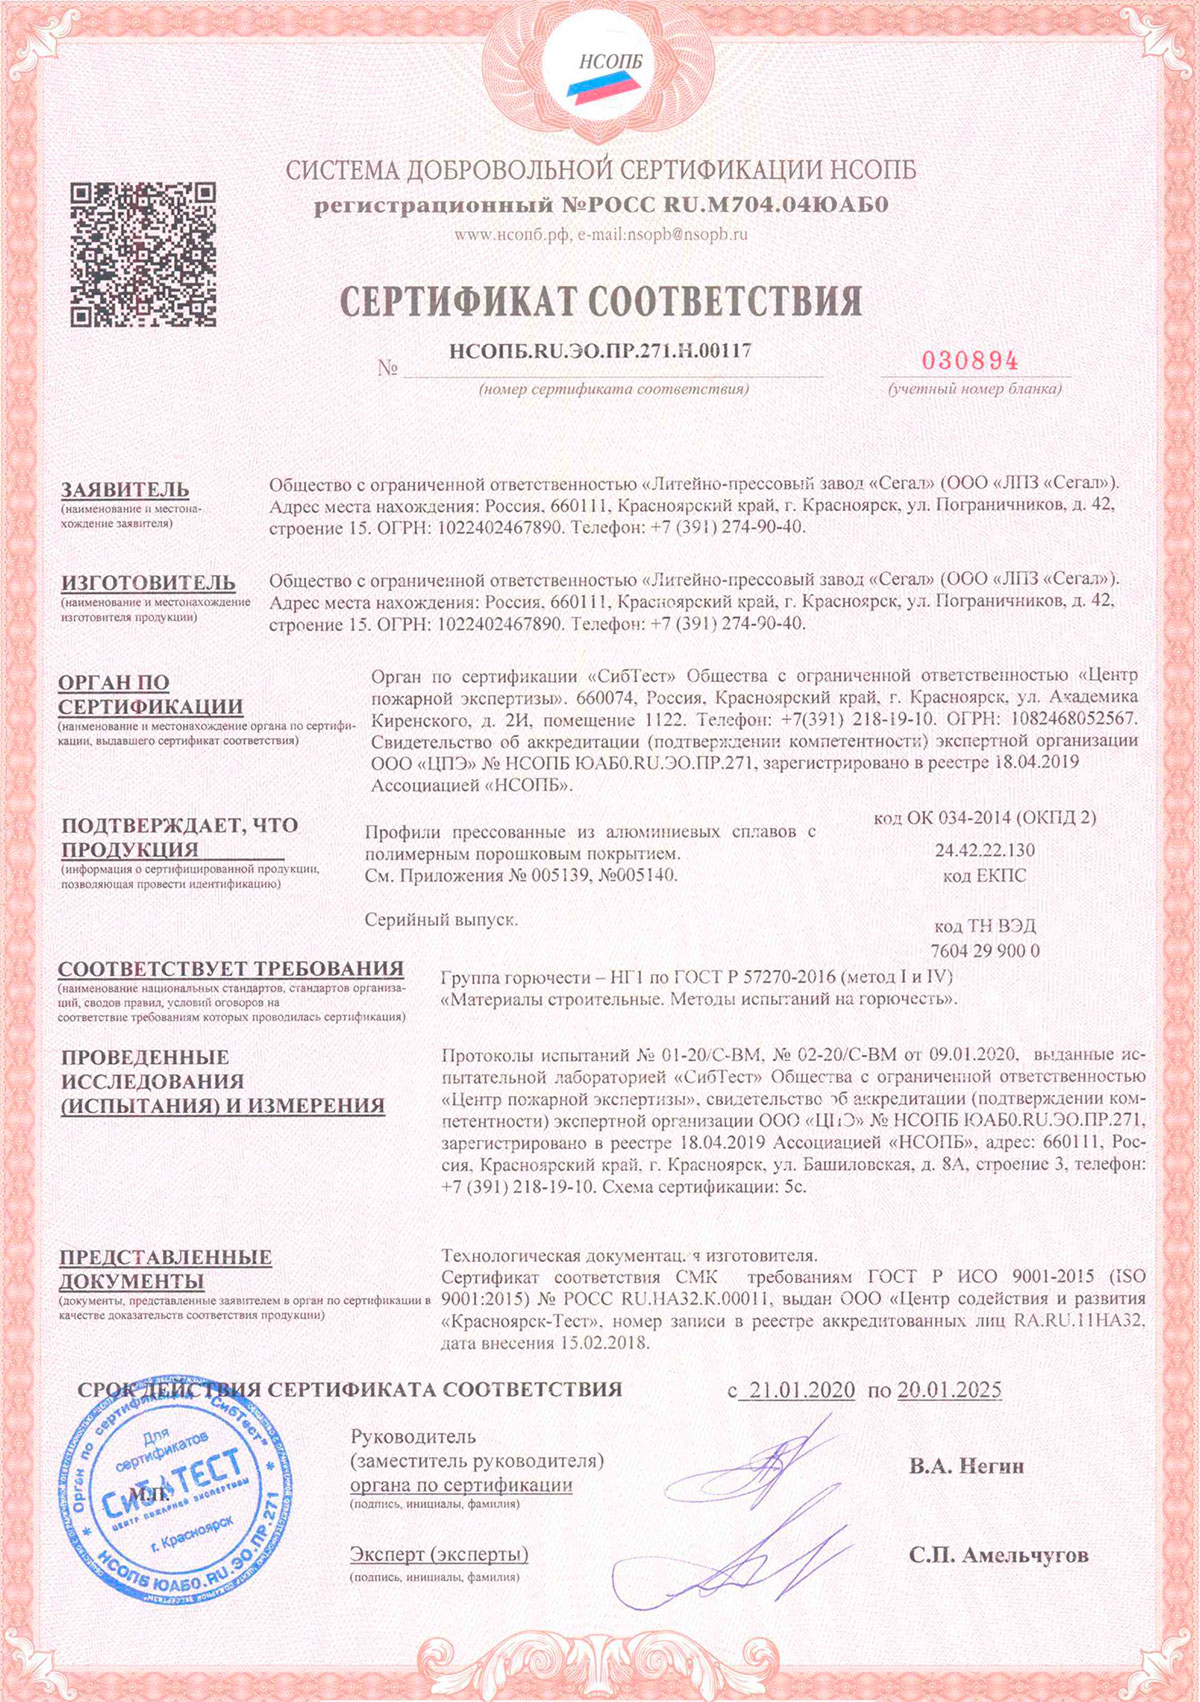 ЛПЗ Сегал, сертификат соответствия, 20.01.2025